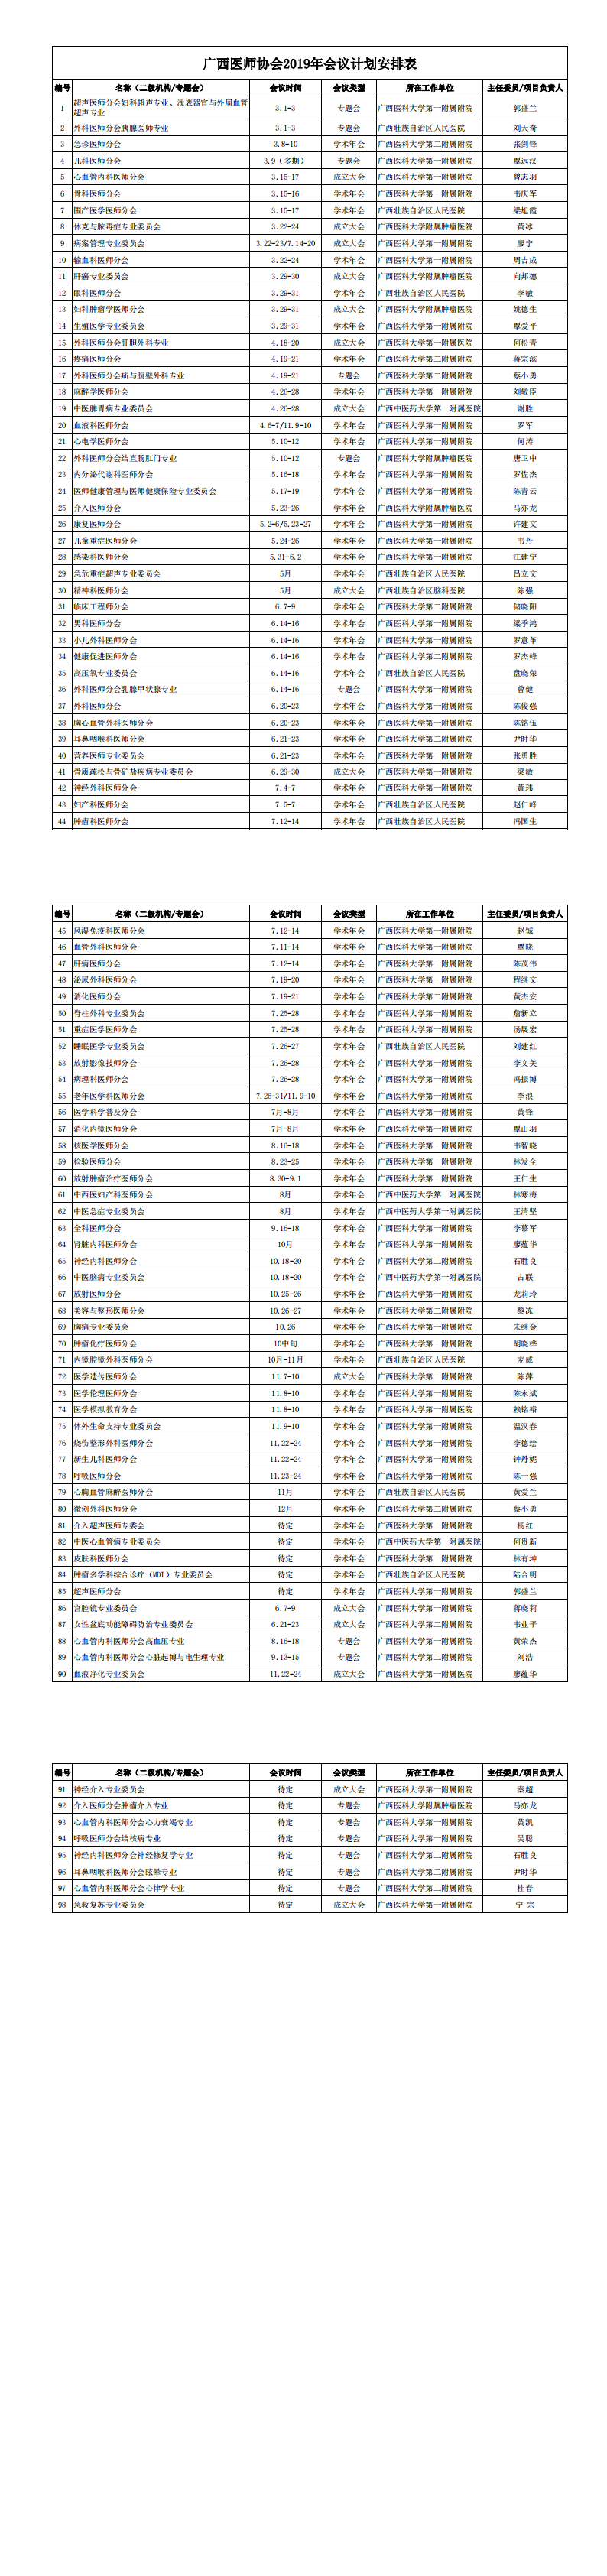 600cc全讯白菜2019年会议计划安排表(1)_00.png